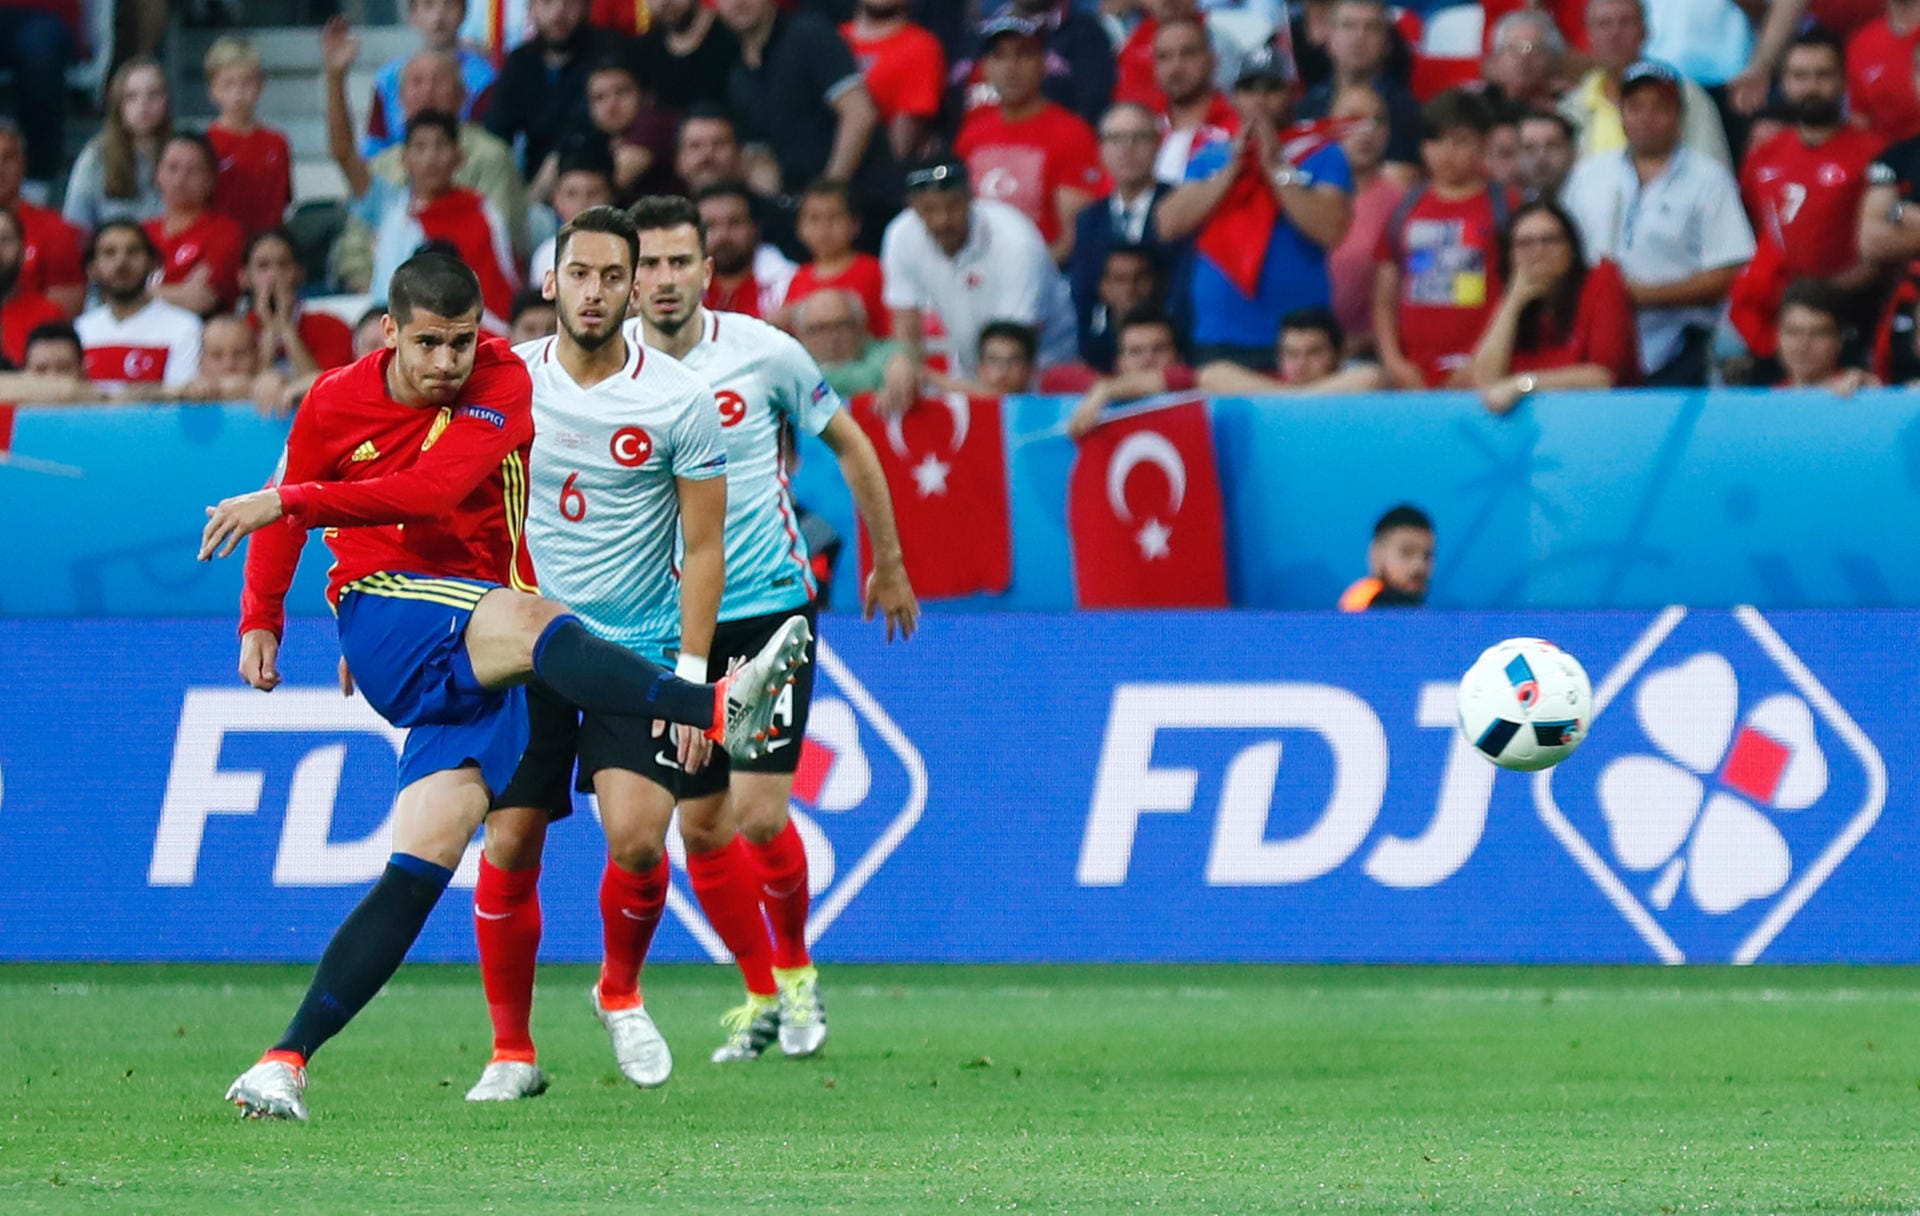 Spaniens Alvaro Morata prüft nach sieben Spielminuten aus 17 Metern erstmals den türkischen Keeper Volkan Babacan, der jedoch recht problemlos parieren kann.